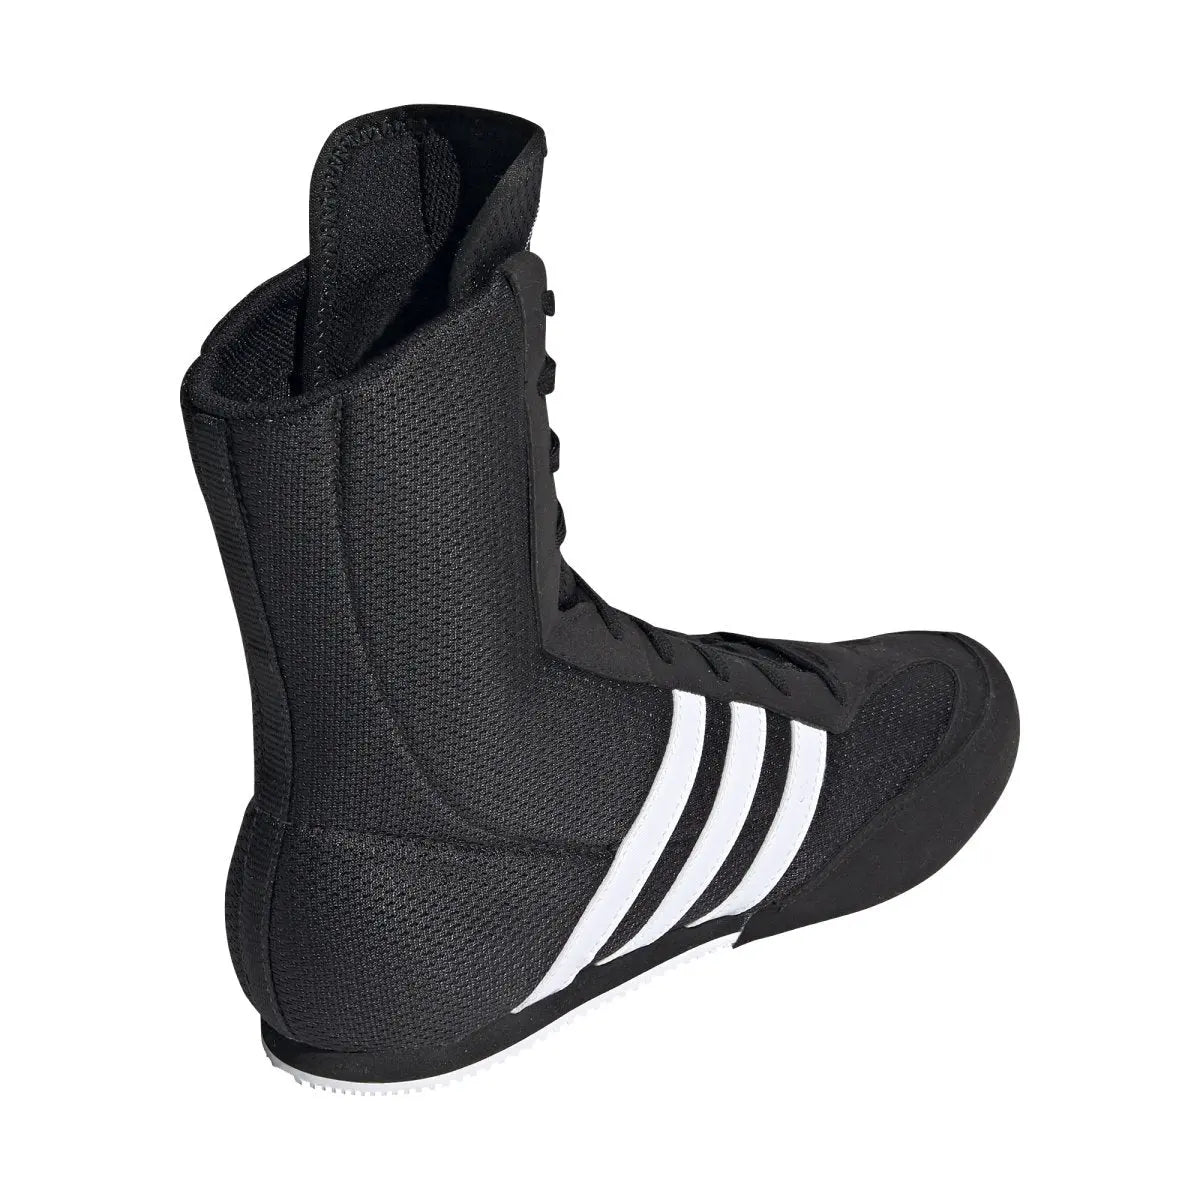 Adidas Box Hog Boxing Boots - Black White Adidas